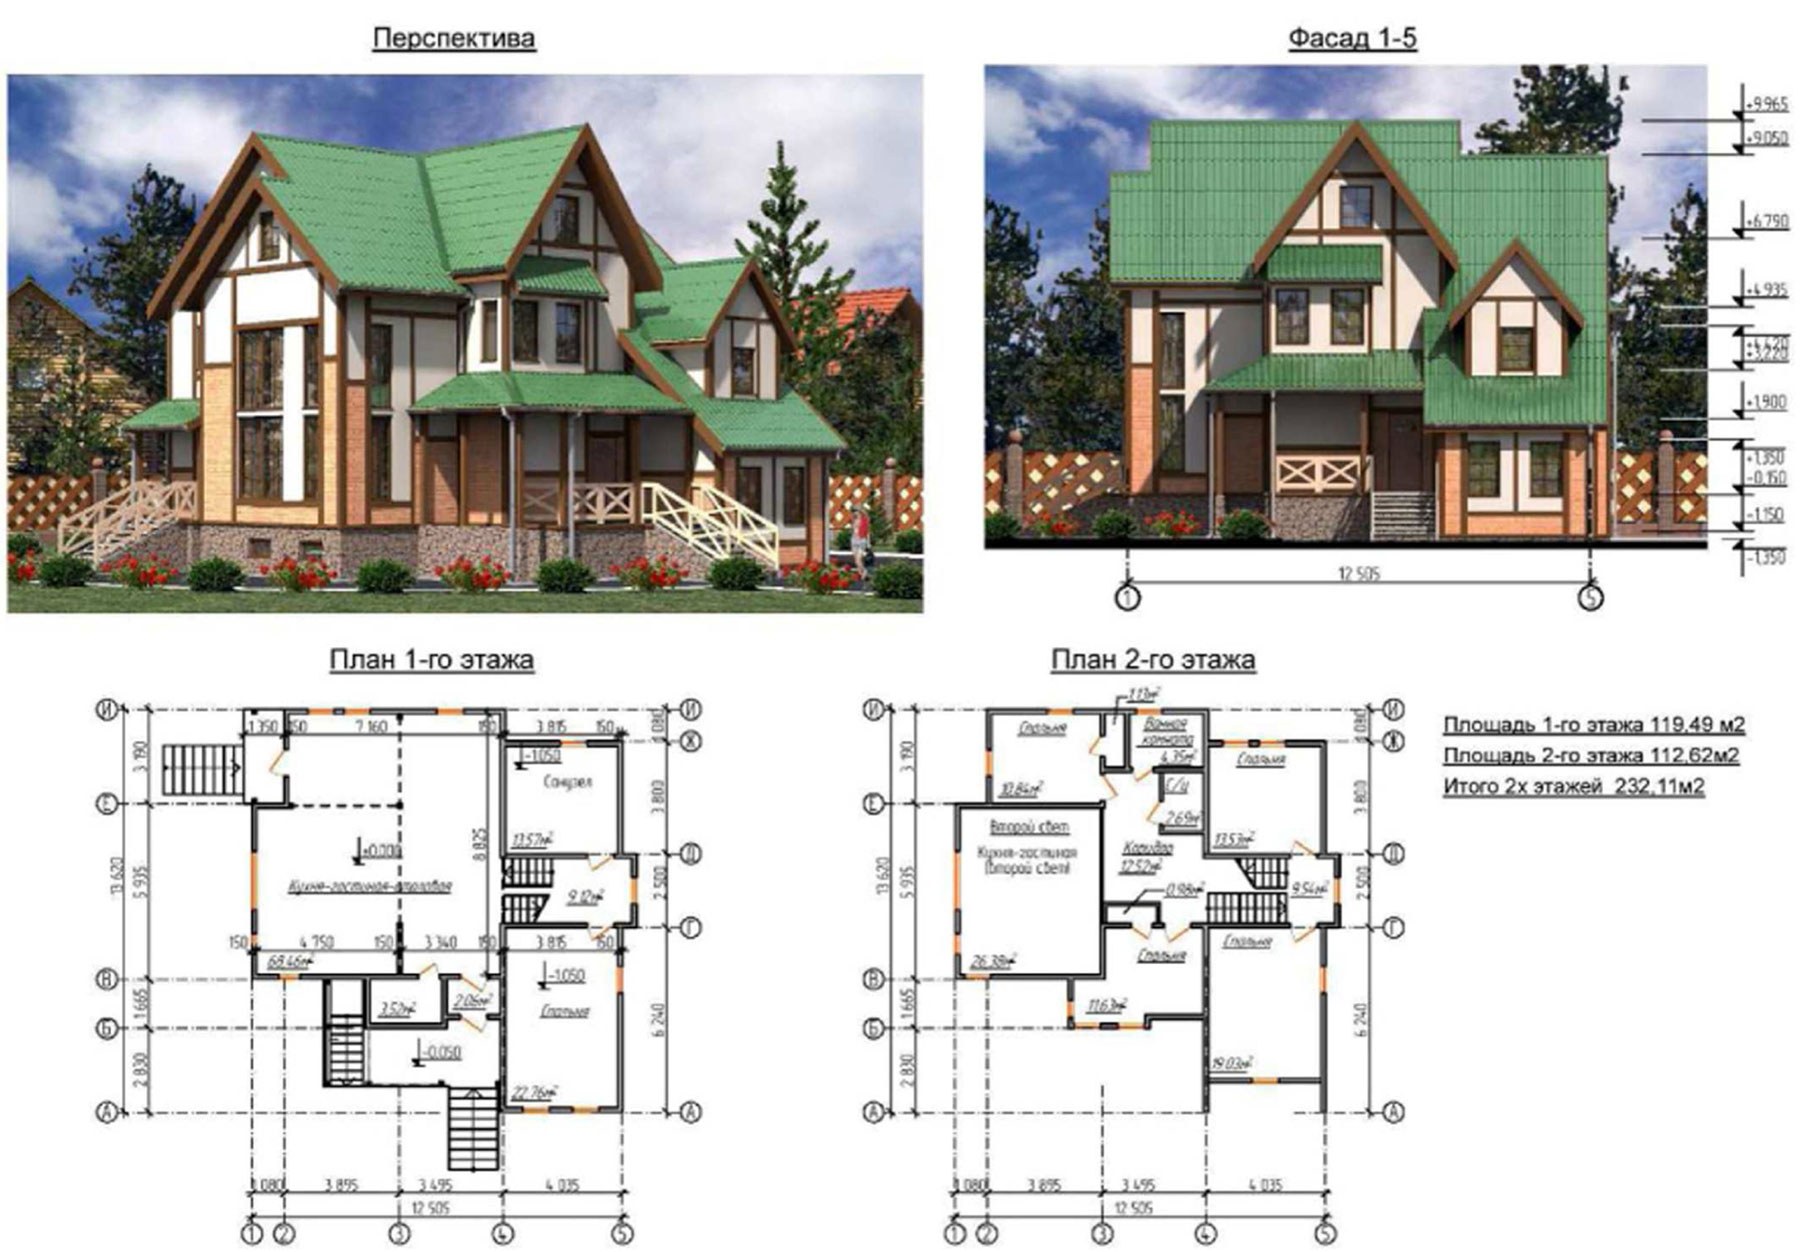 Проект дома чертеж. План коттеджа с размерами. Проект коттеджа с размерами. Проект коттеджа с планом. Проекты домов с планом и размерами.